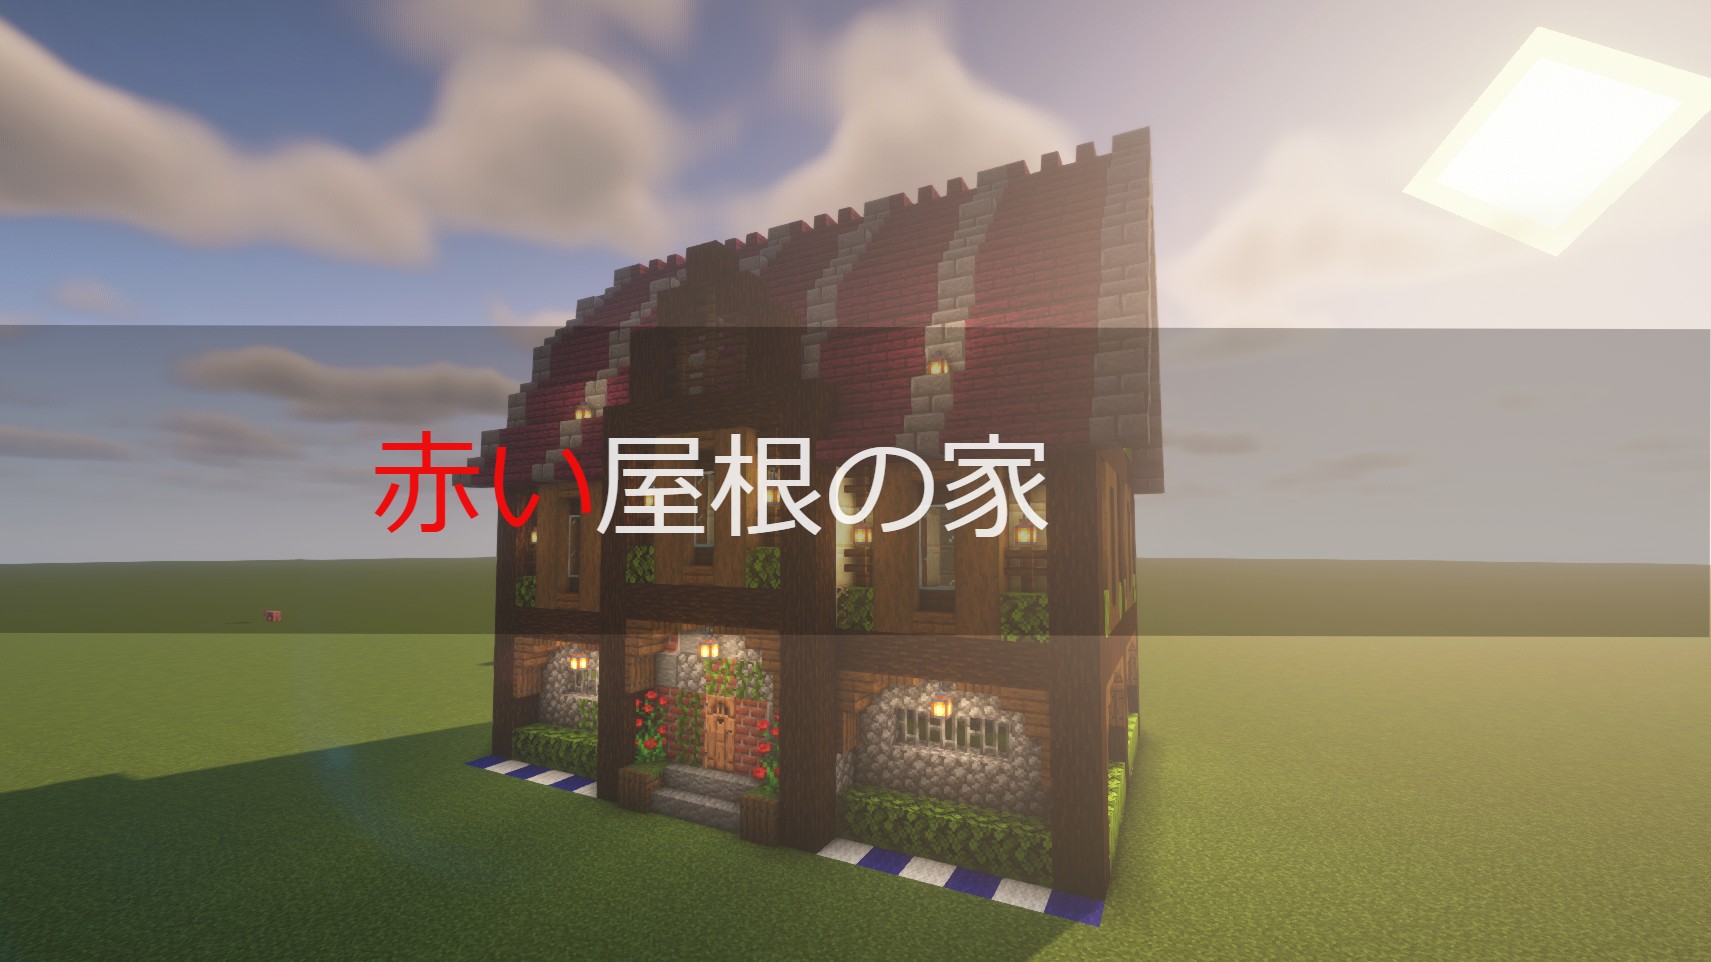 マイクラ おしゃれで簡単な家の作り方解説 赤い屋根の家編 Nqahcraft